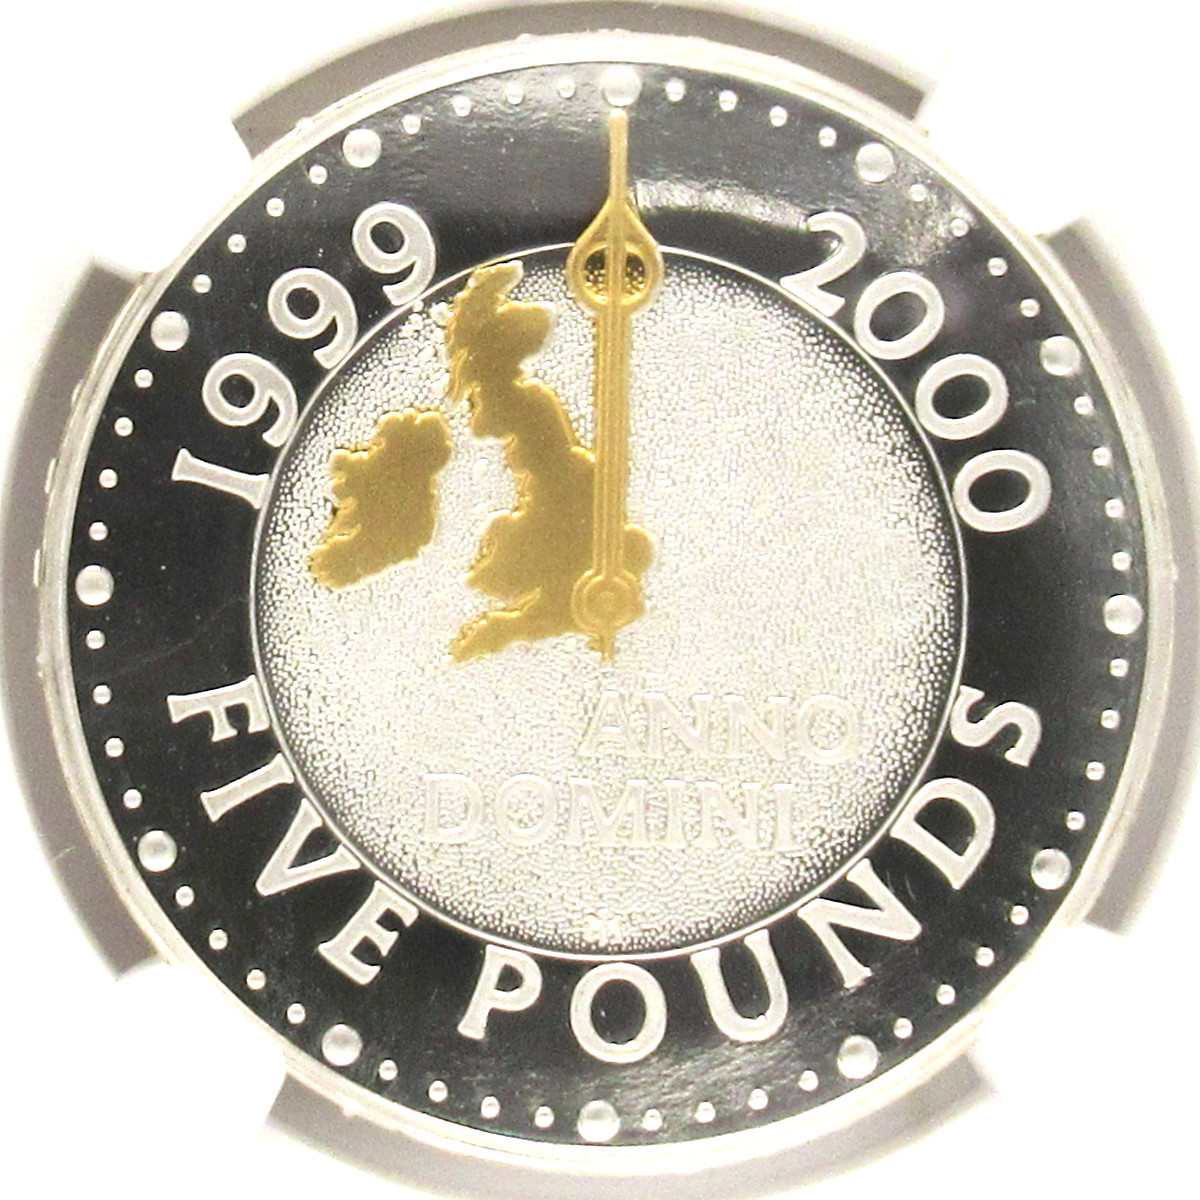 『高鑑定』2000年 イギリス 5ポンド銀貨 金メッキ仕様 NGC PF69 ULTRA CAMEO ミレニアム エリザベス2世 銀貨_画像1